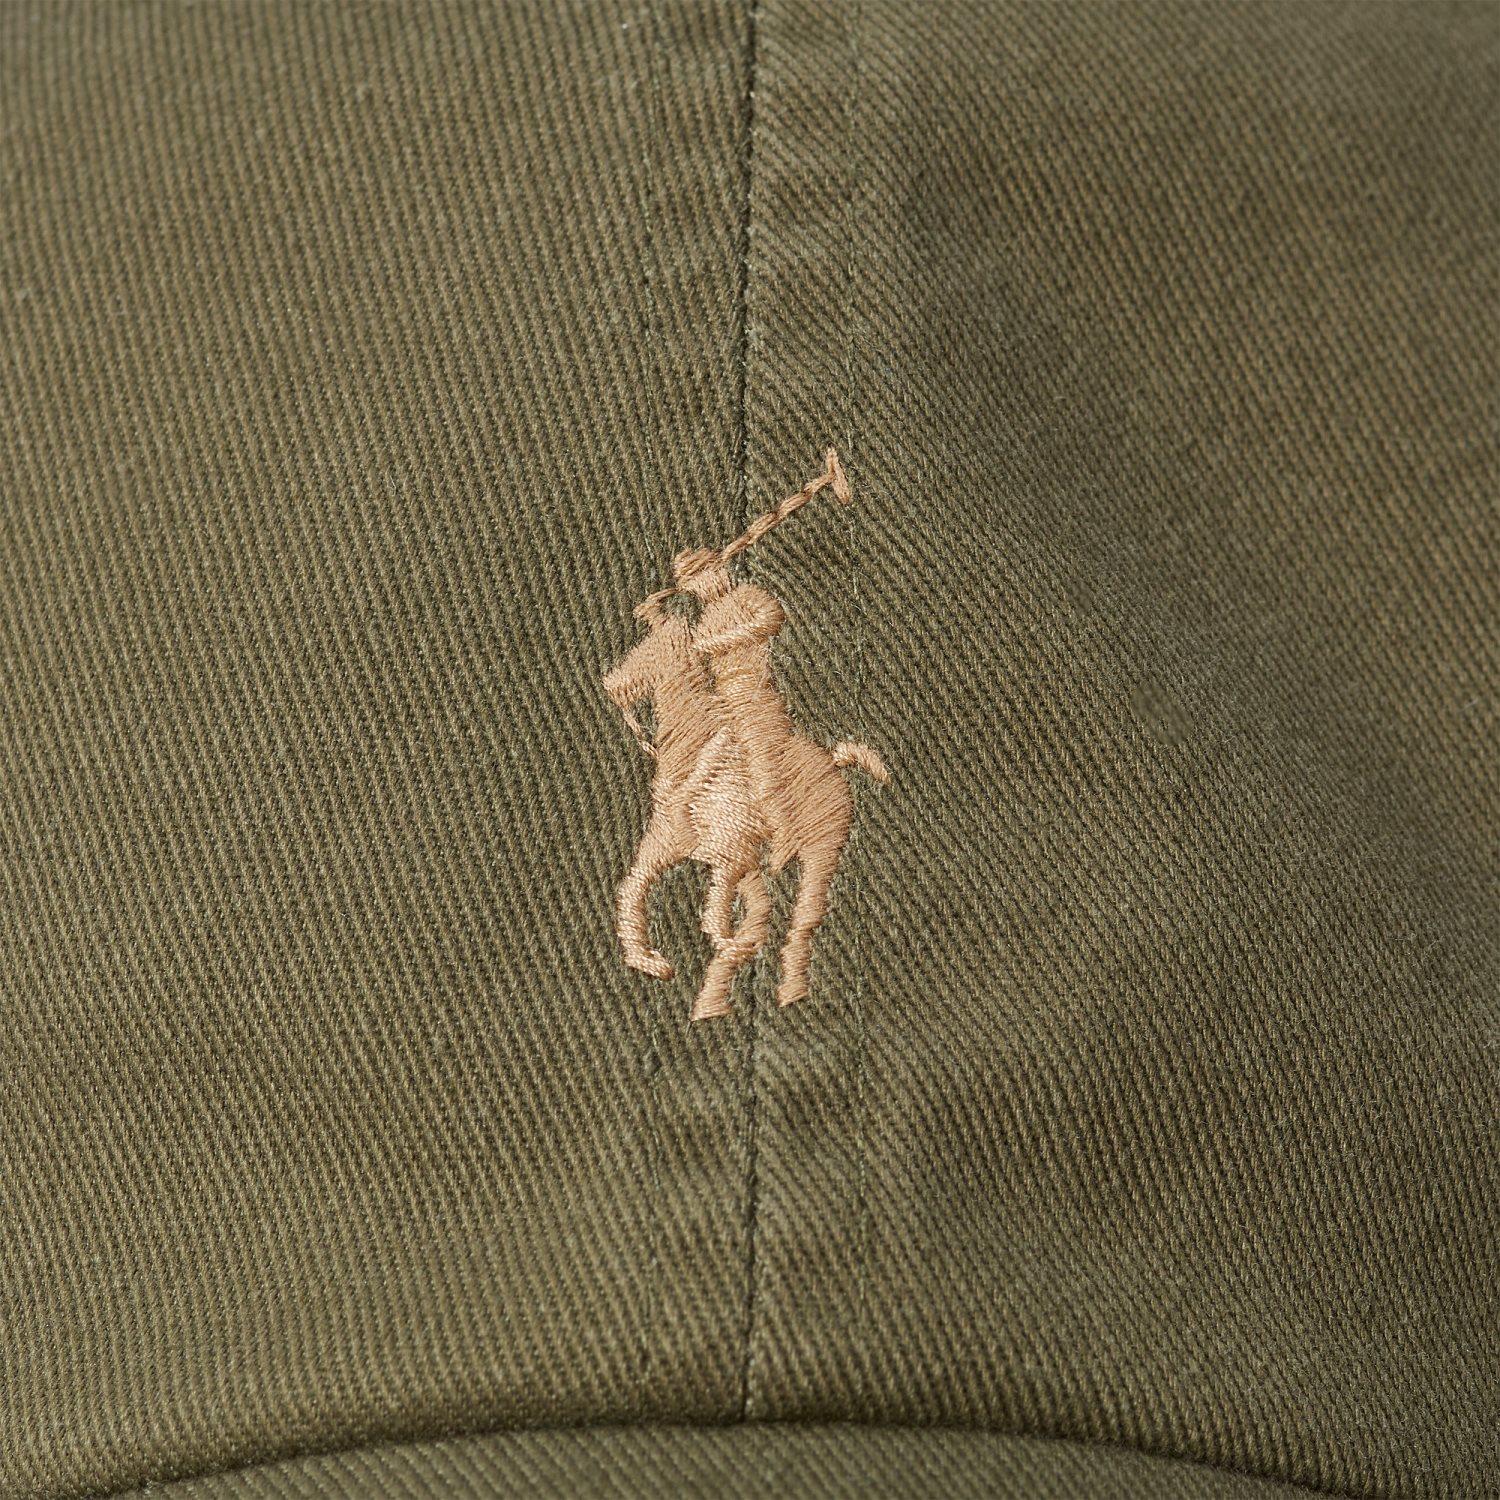 Polo Ralph Lauren CLS SPRT CAP-CAP-HAT Caps Militærgrønn - chrismoa.no